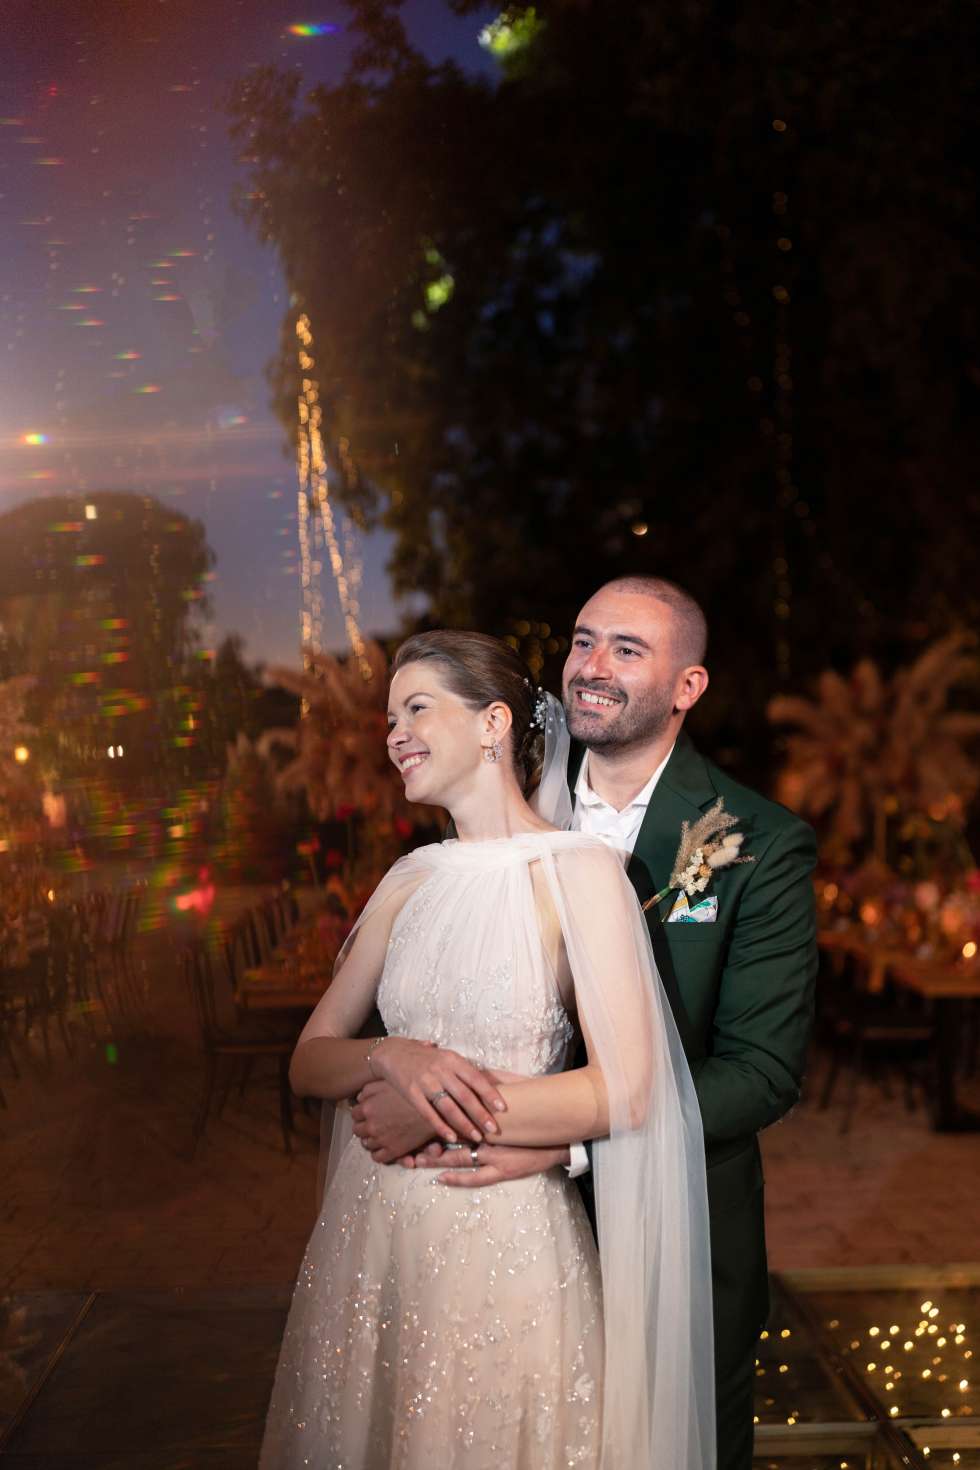 حفل زفاف حالم بطابع بوهيمي في لبنان